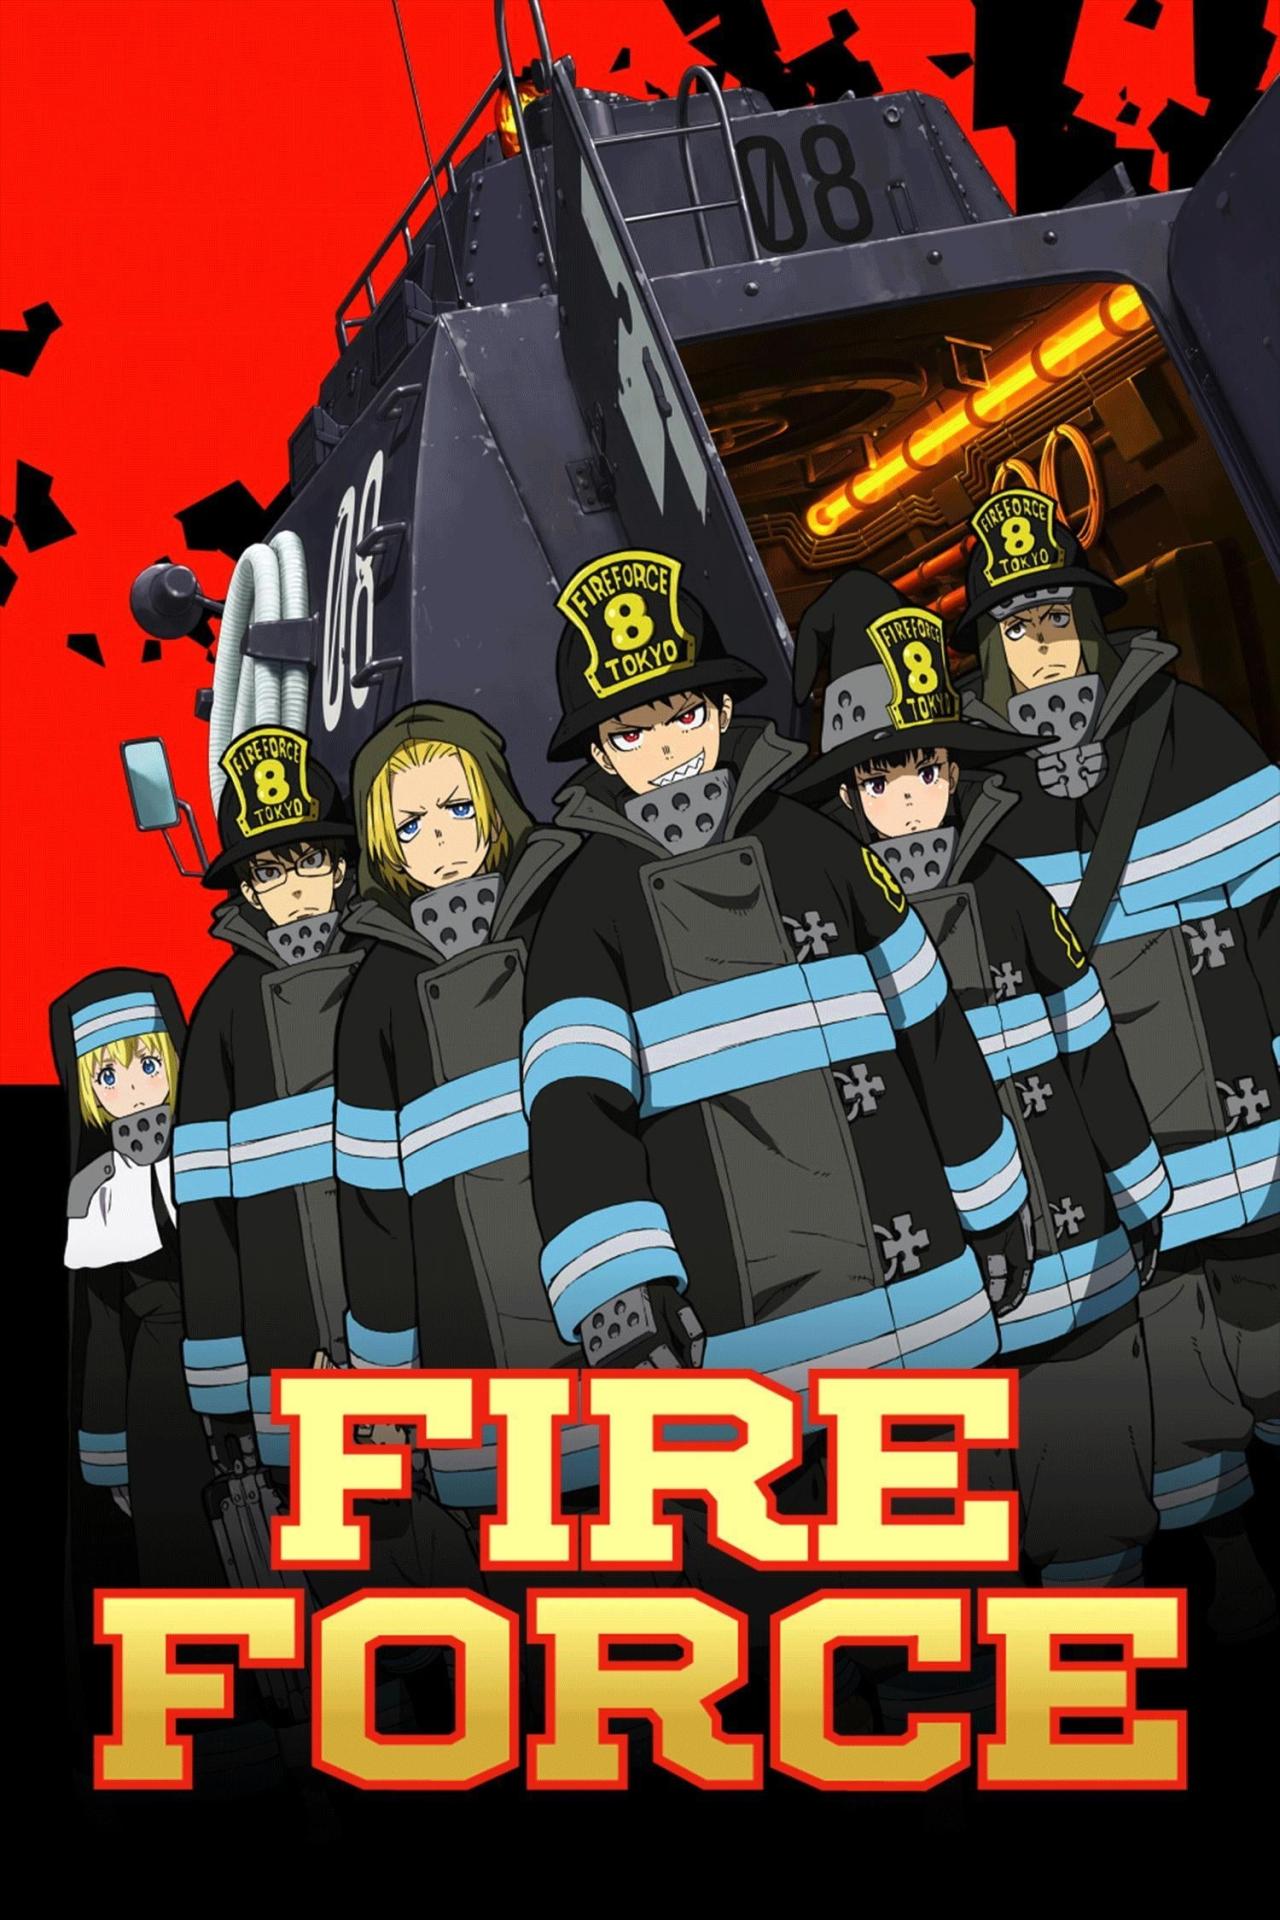 Affiche de la série Fire Force poster